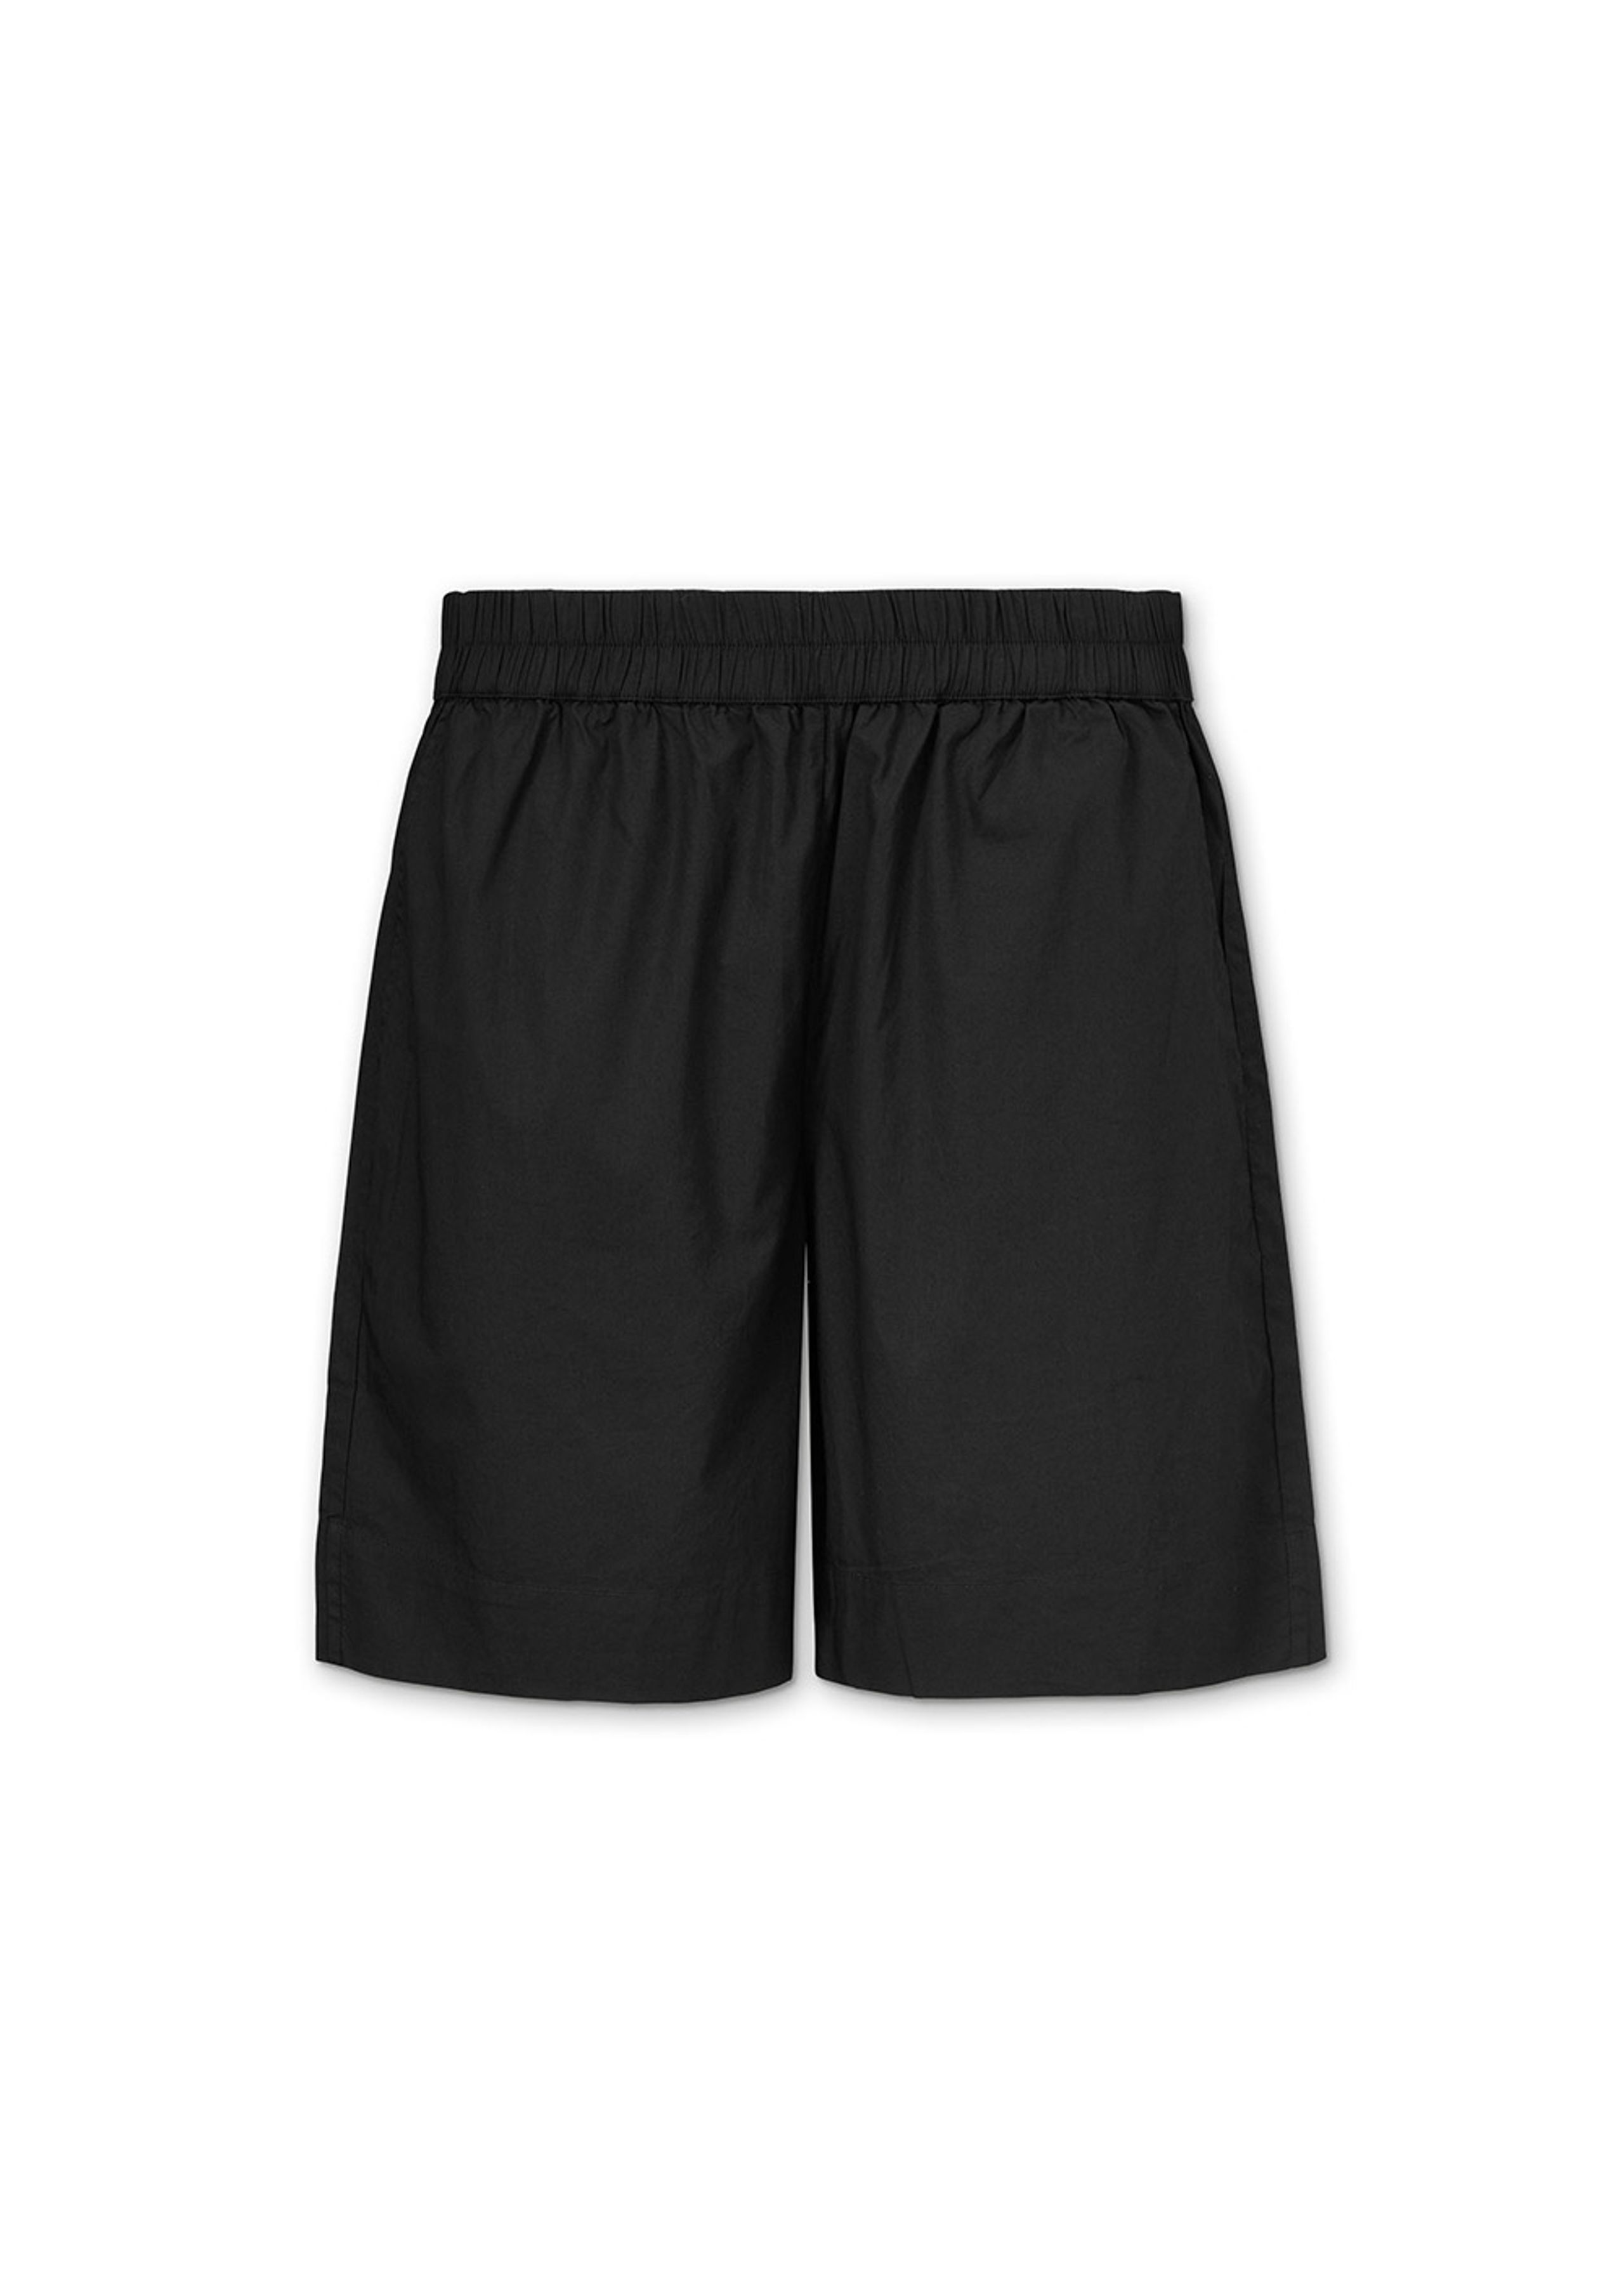 Aiayu - Shorts - Shorts Long - Black